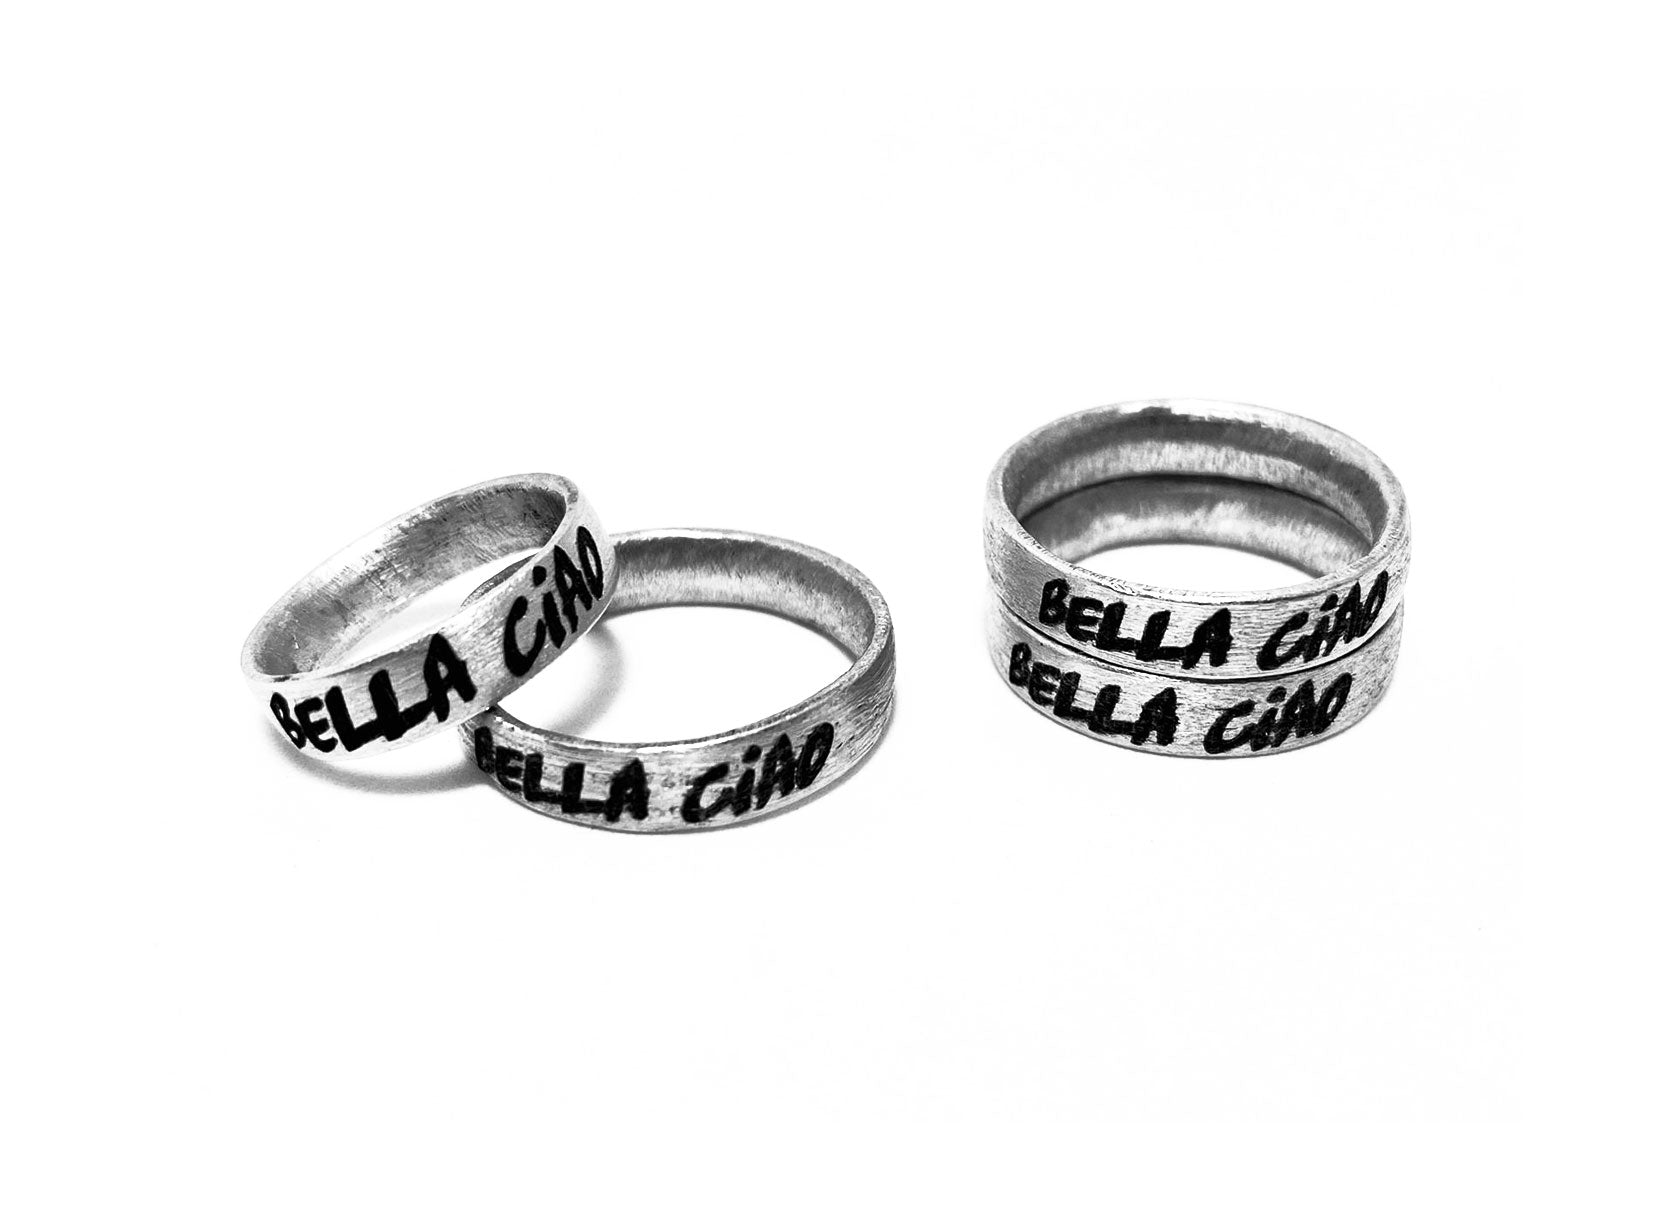 anelli unisex anelli alluminio anelli donna fascia larga anelli bigiotteria anelli artigianali anello inciso anello bella ciao anello scritta fatta a mano